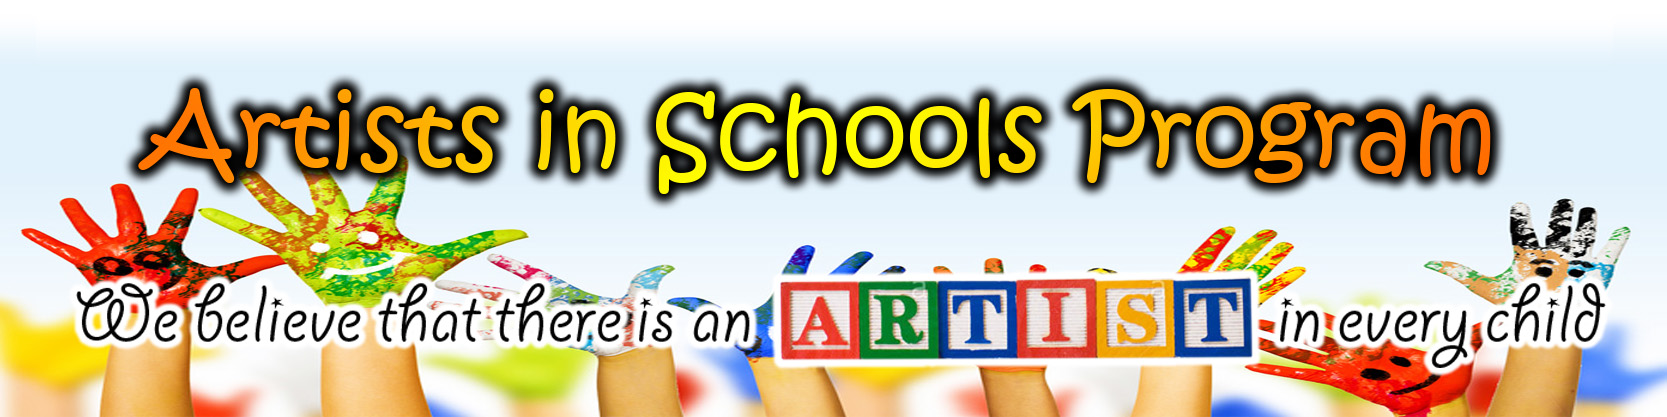 Artists in Schools